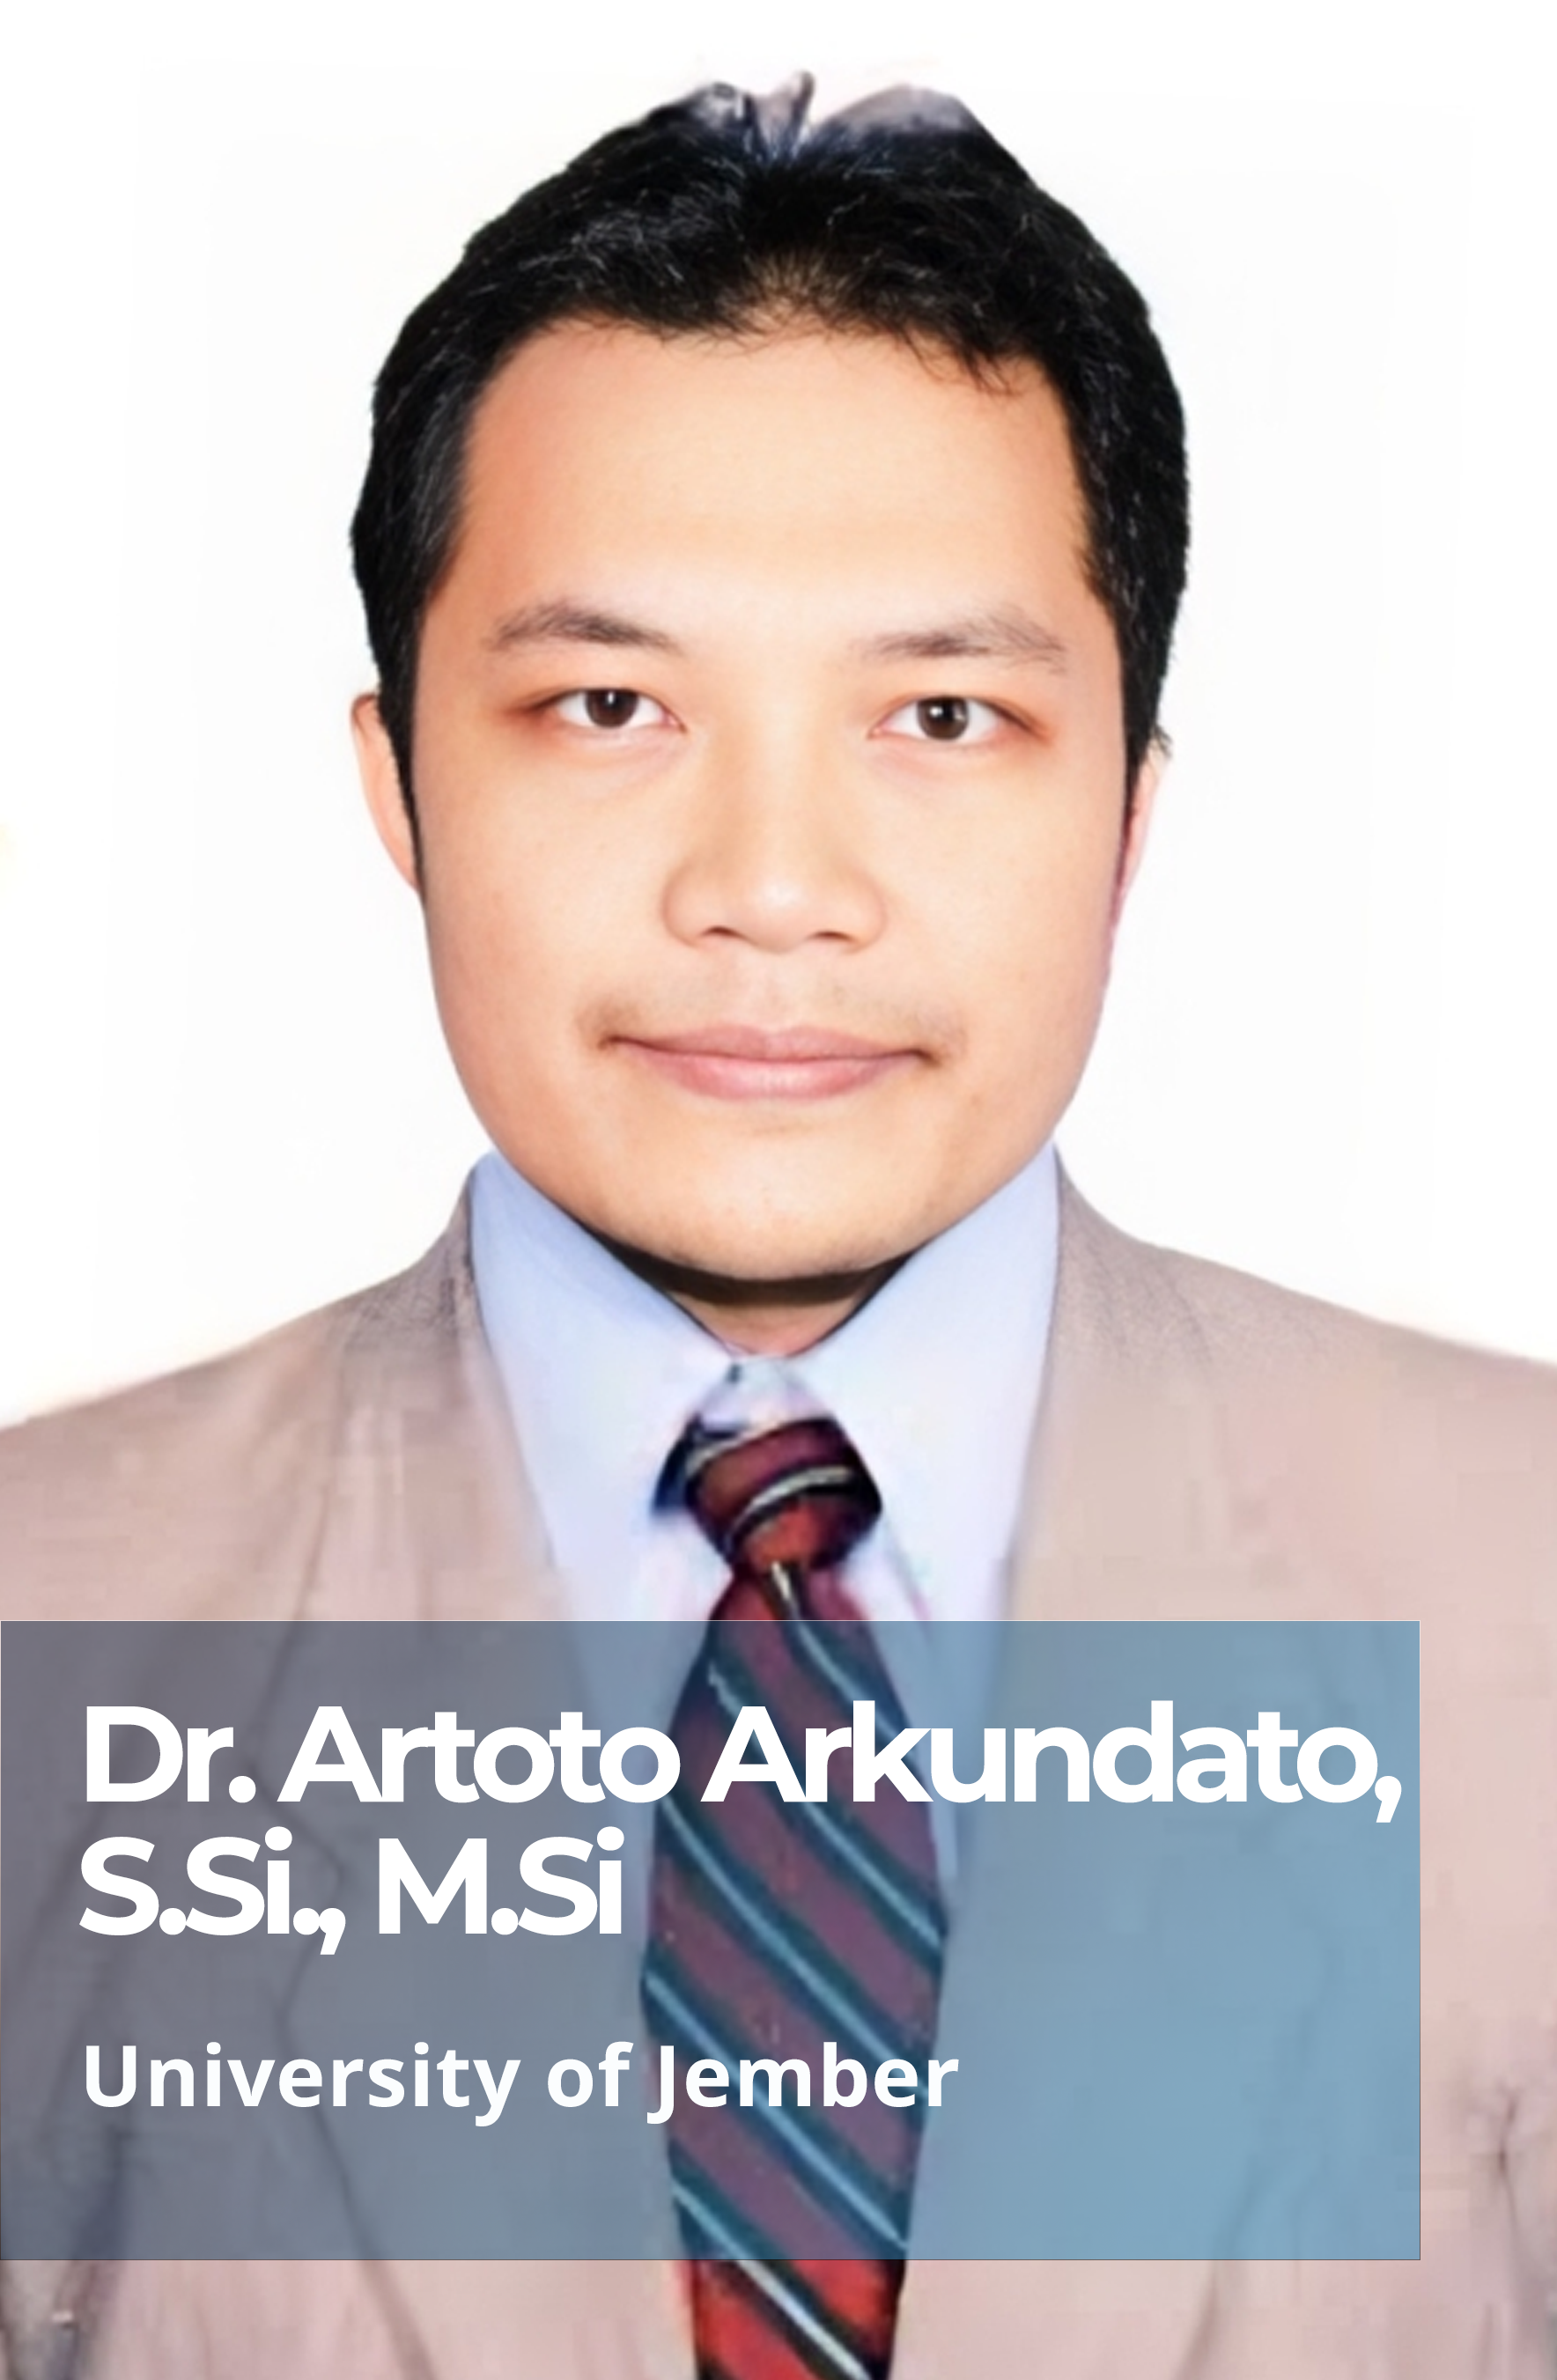 Dr. Artoto Arkundato, S.Si., M.Si